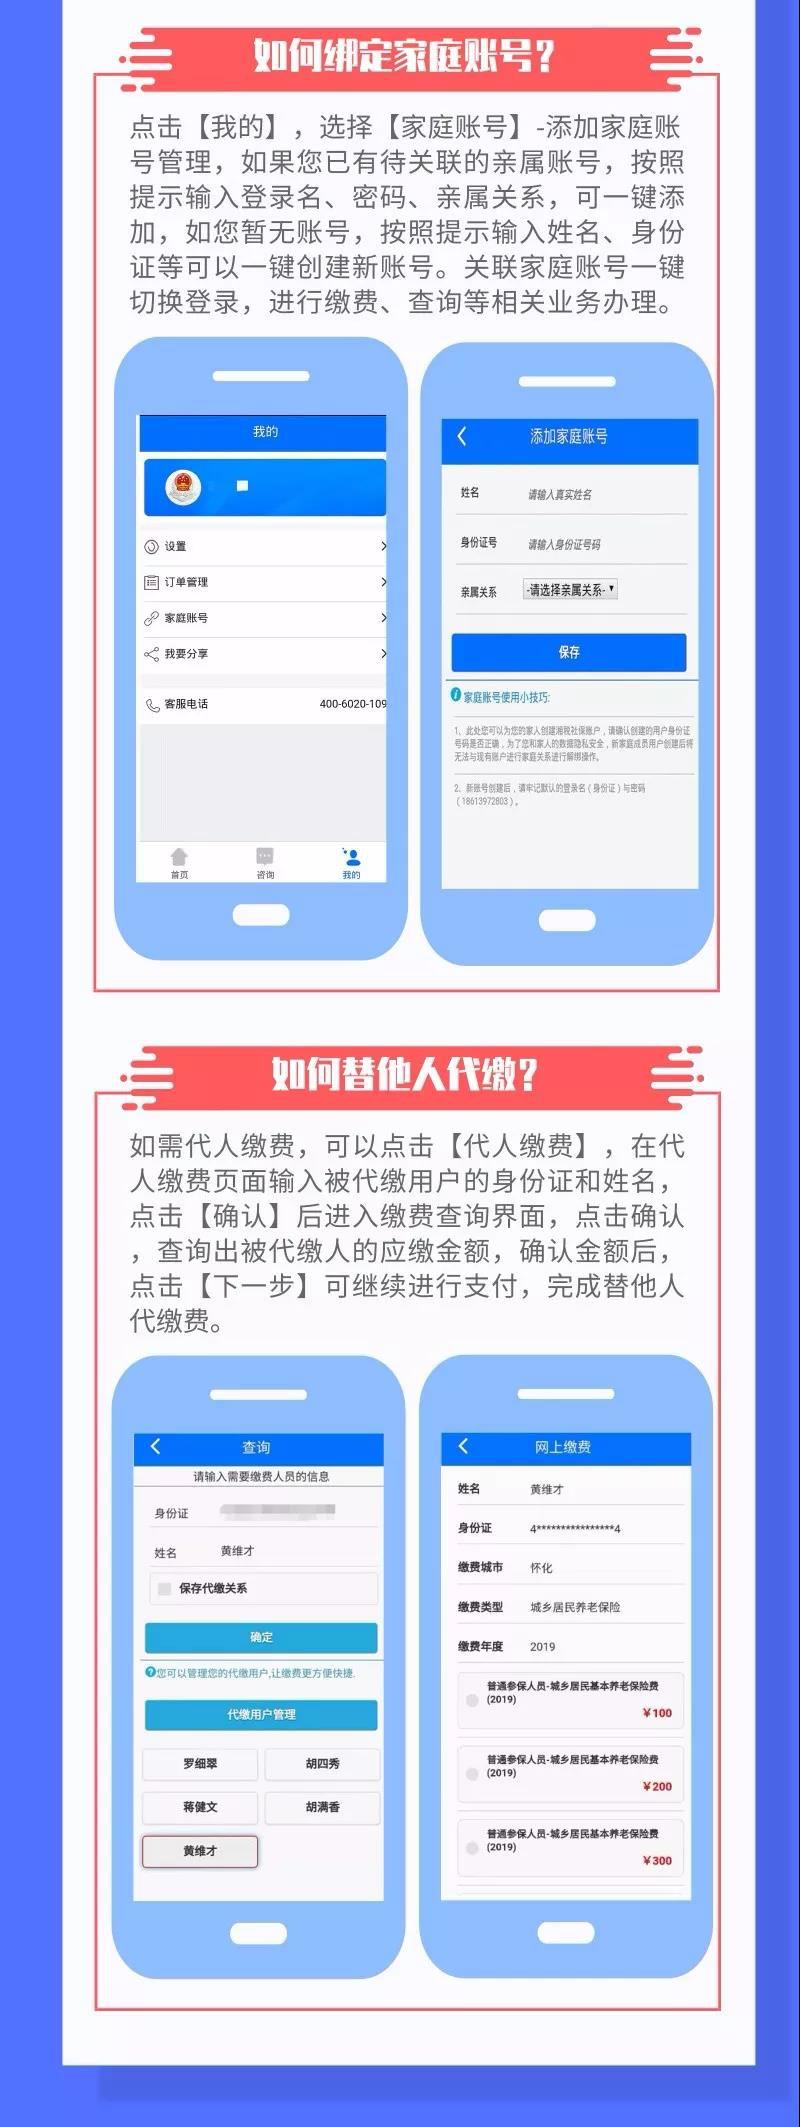 社保手机app缴费新闻农村合作医疗网上缴费app